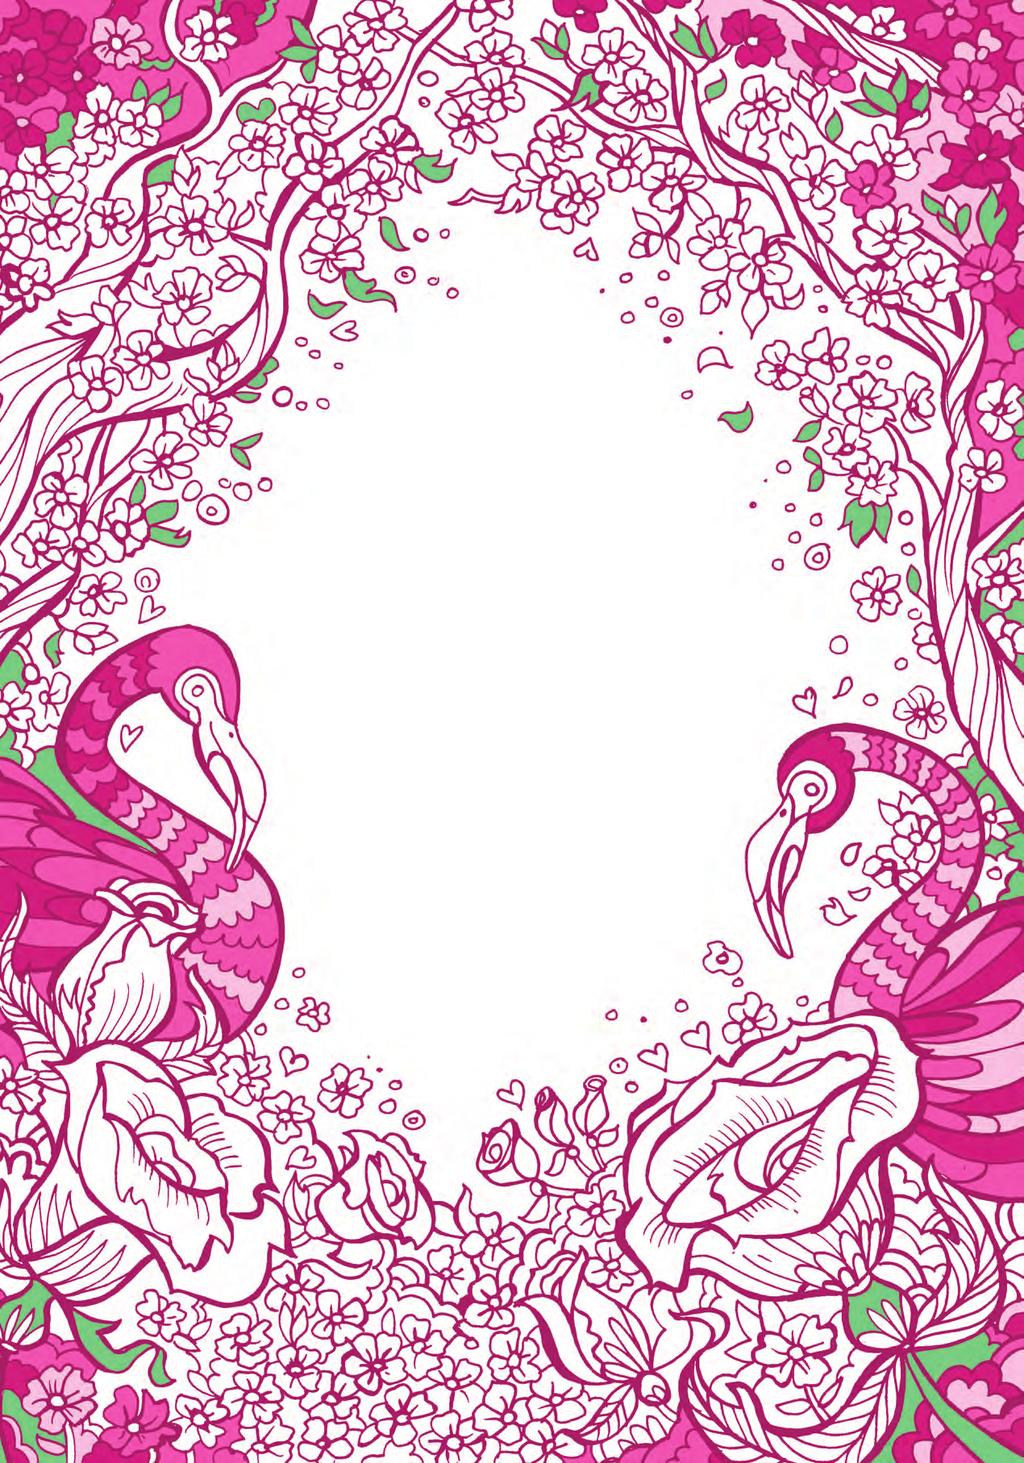 ΡΟΖ Το ροζ είναι το χρώμα των λεπτεπίλεπτων πέταλων των λουλουδιών και των μεγαλόπρεπων και